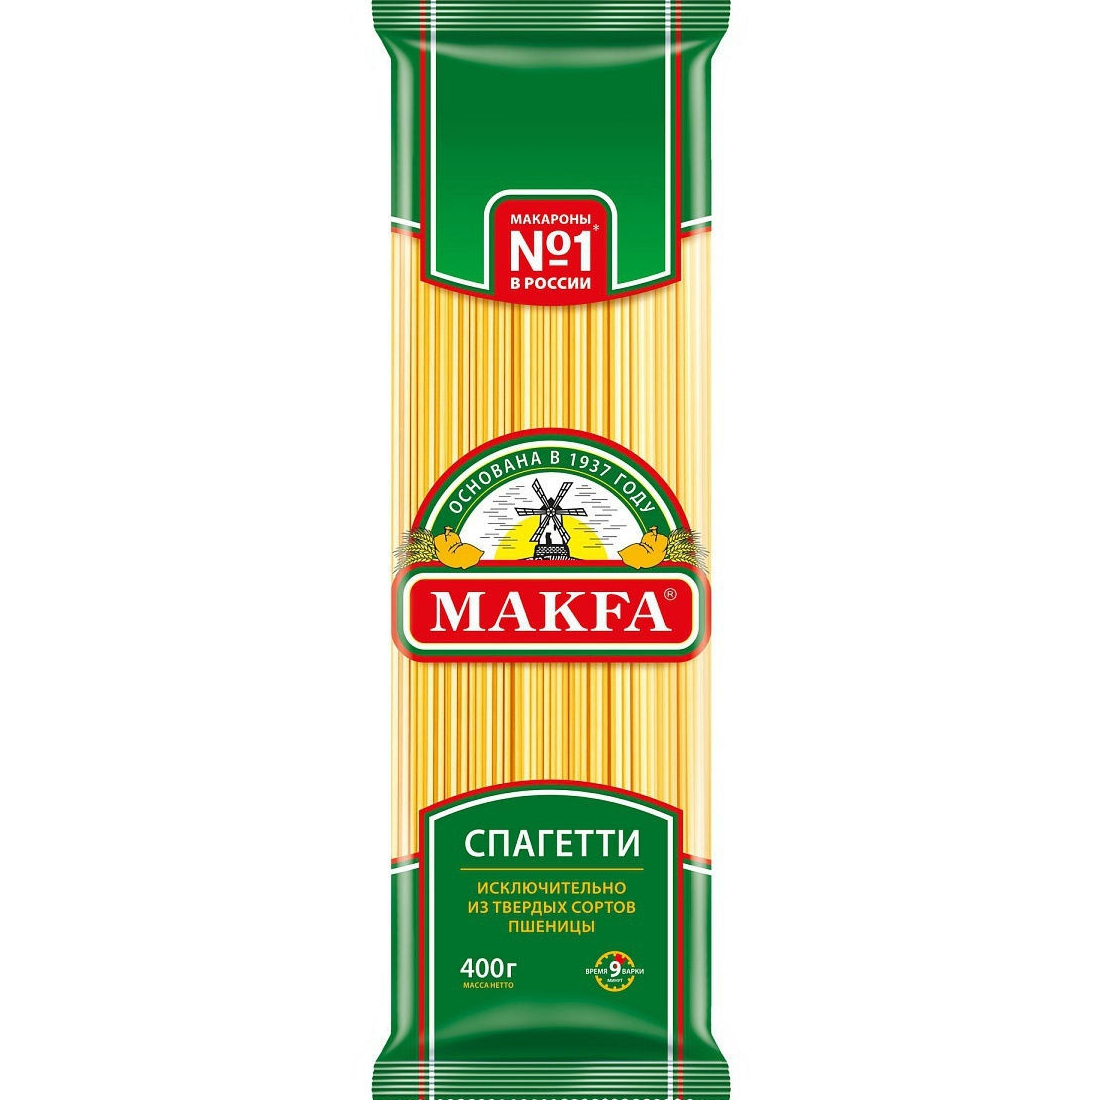 Макароны Makfa Спагетти 400 г макароны роллтон 400г спагетти